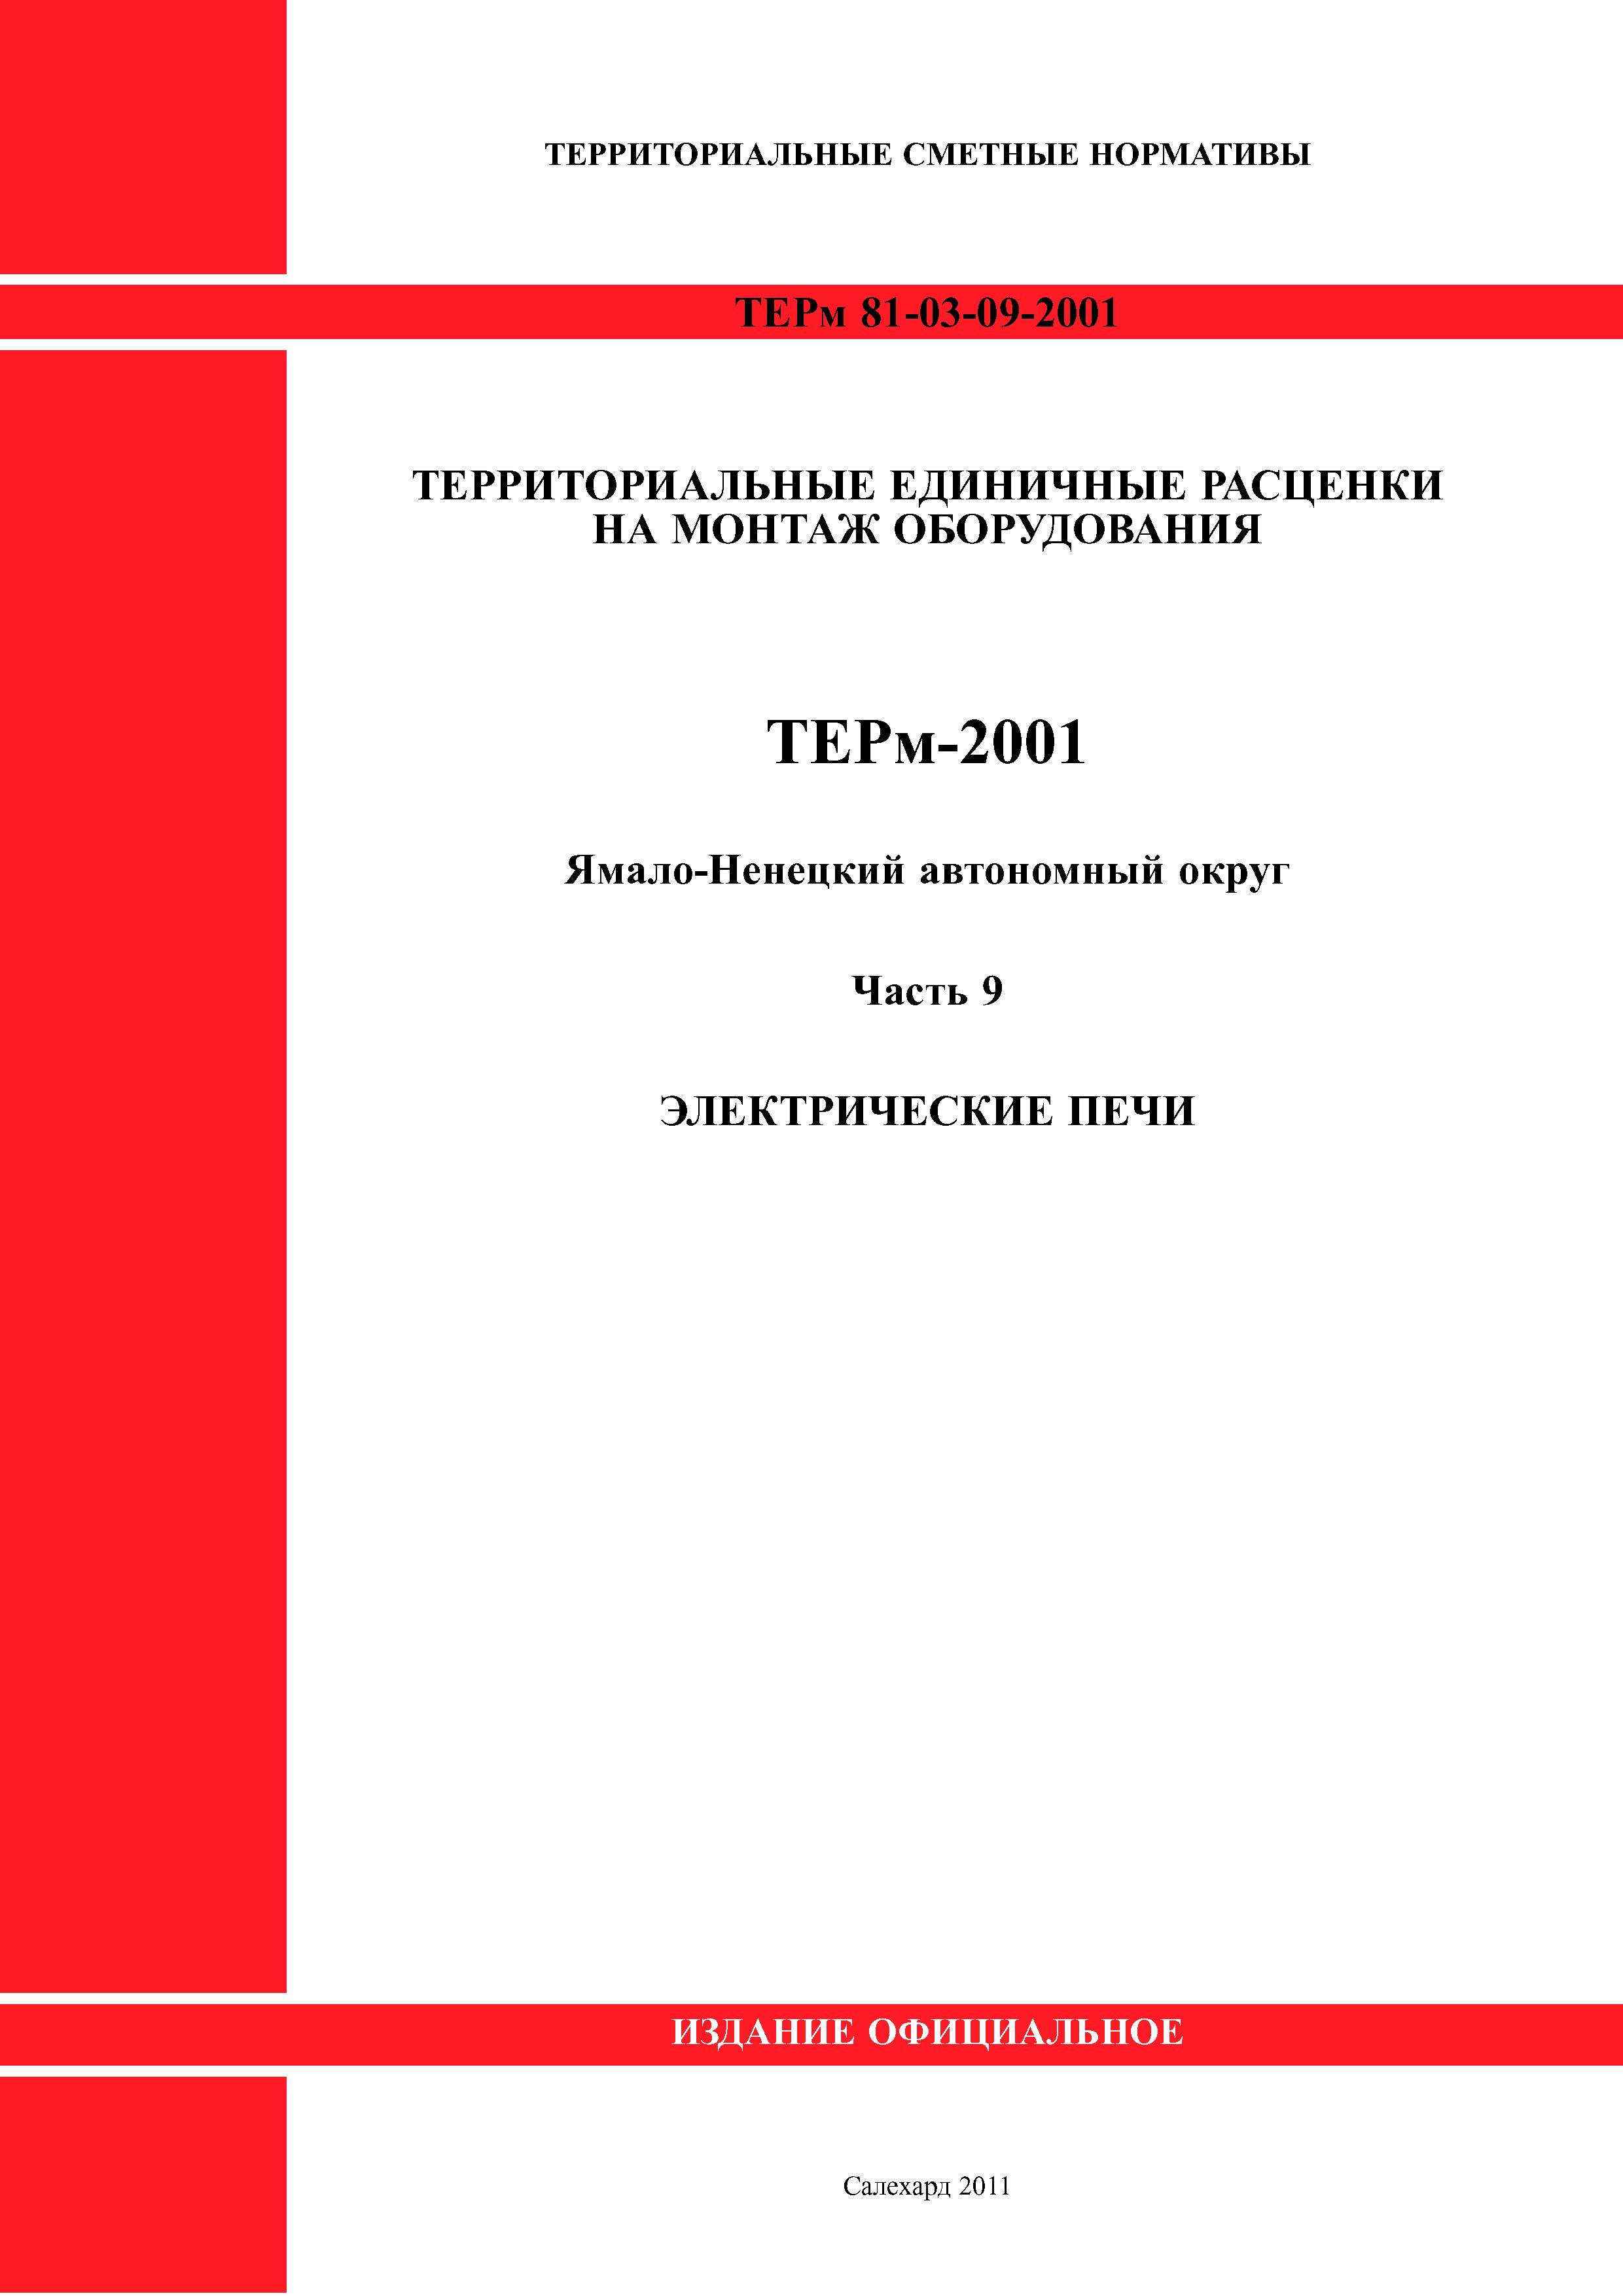 ТЕРм Ямало-Ненецкий автономный округ 09-2001